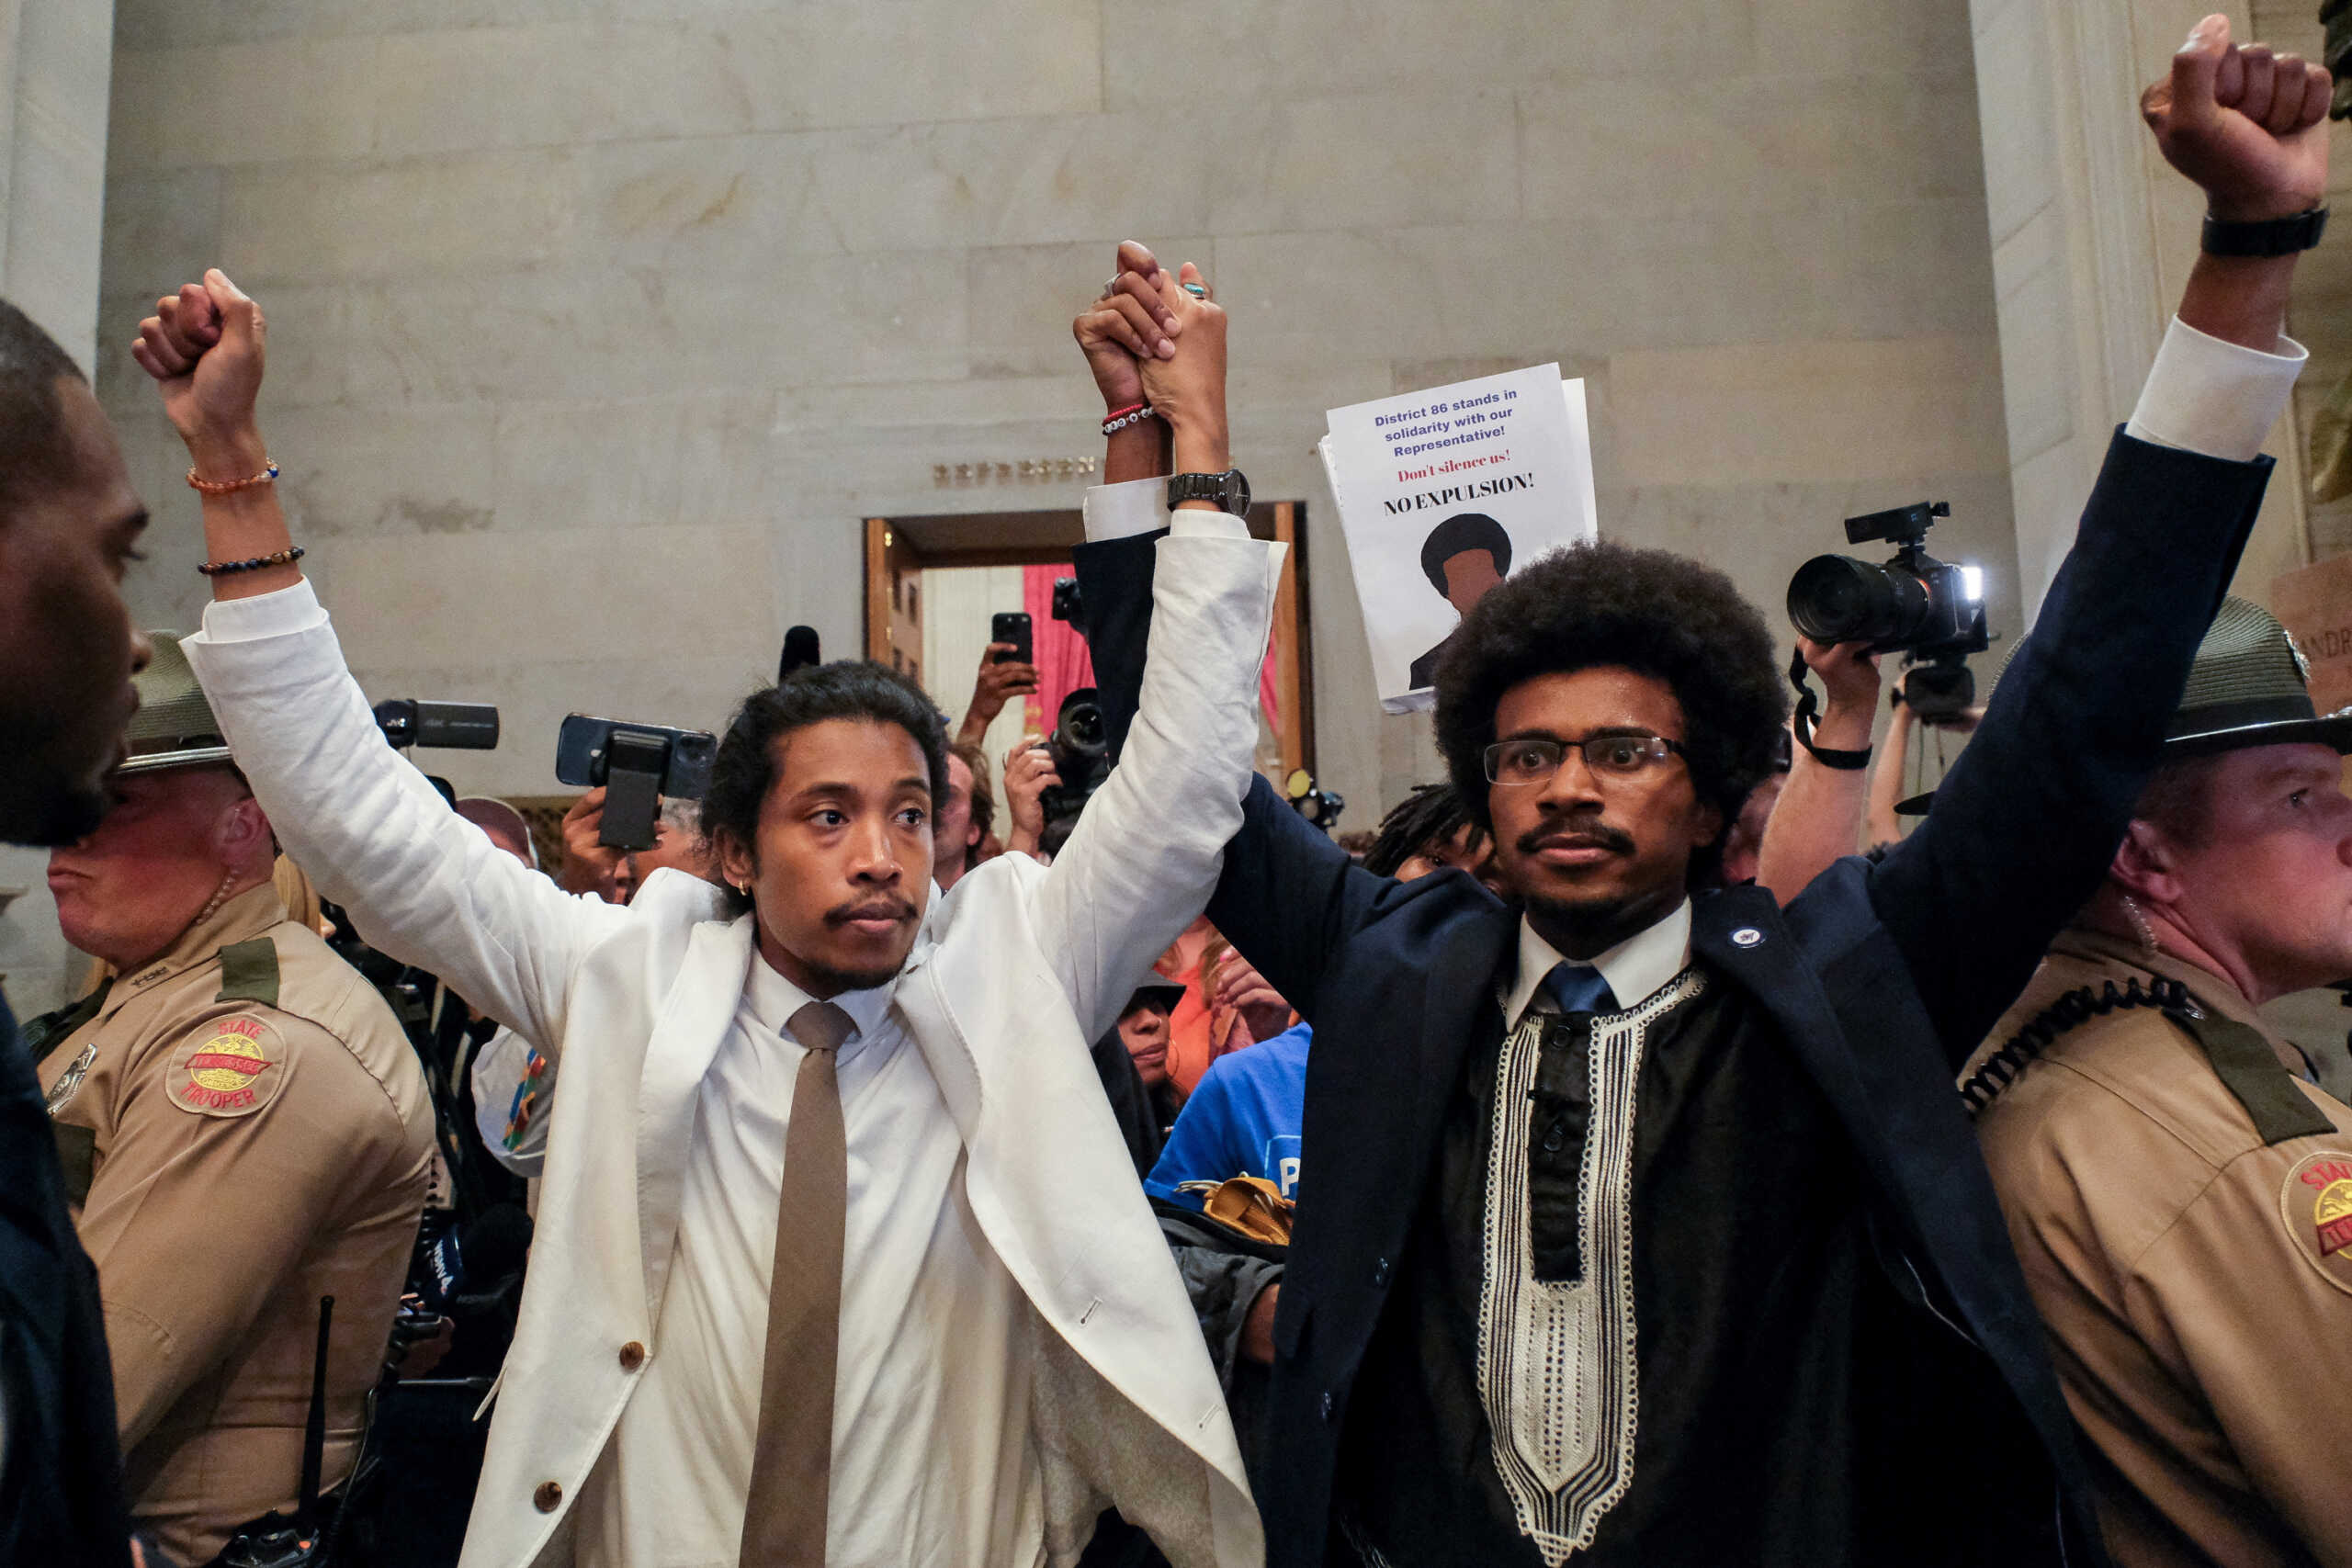 ΗΠΑ: Δυο αφροαμερικανοί βουλευτές αποπέμφθηκαν από το πολιτειακό Κογκρέσο του Τενεσί επειδή διαδήλωσαν κατά των όπλων